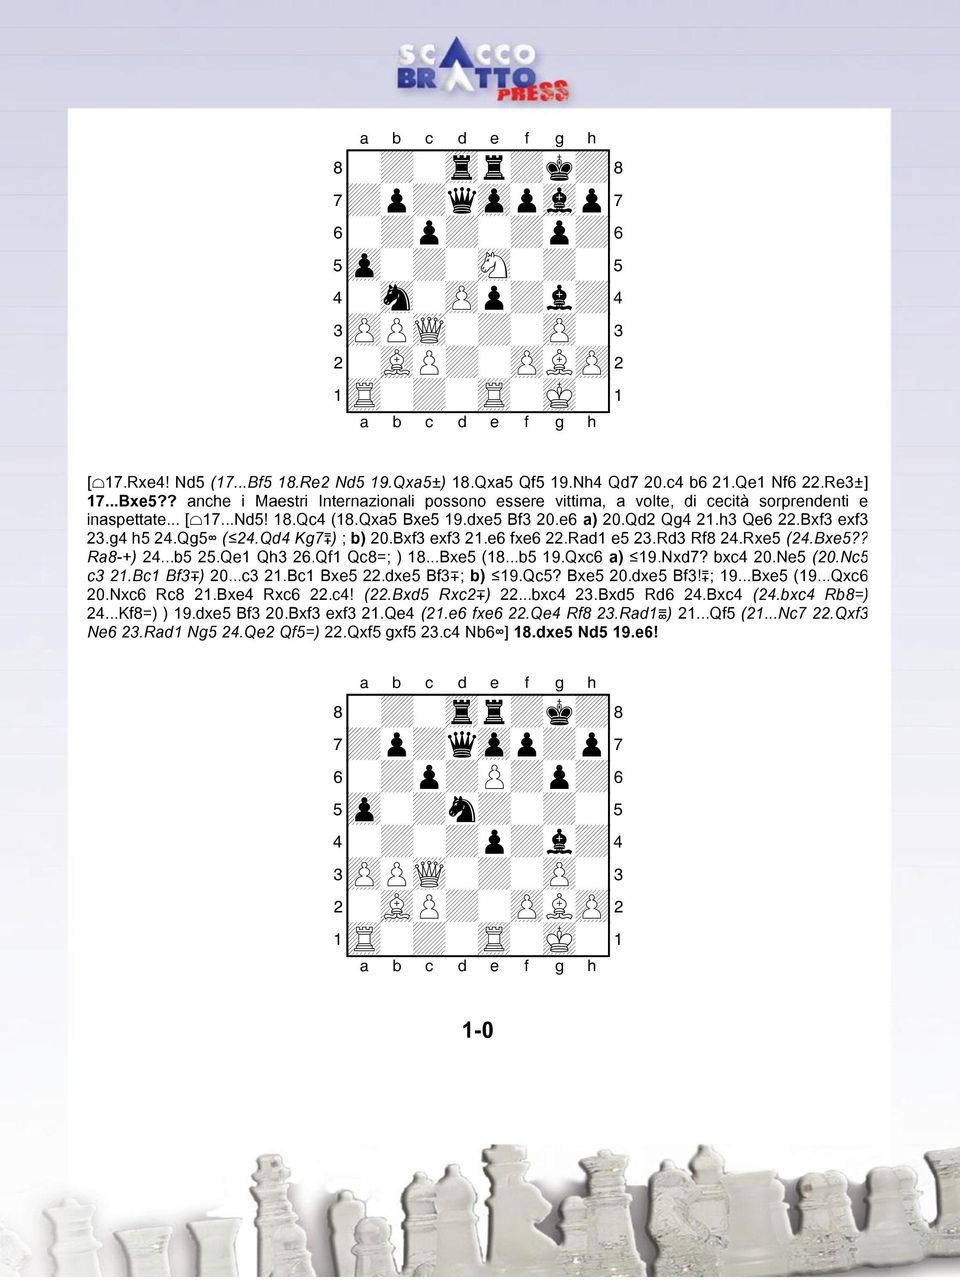 Bxf3 exf3 23.g4 h5 24.Qg5 ( 24.Qd4 Kg7³) ; b) 20.Bxf3 exf3 21.e6 fxe6 22.Rad1 e5 23.Rd3 Rf8 24.Rxe5 (24.Bxe5?? Ra8 +) 24...b5 25.Qe1 Qh3 26.Qf1 Qc8=; ) 18...Bxe5 (18...b5 19.Qxc6 a) 19.Nxd7? bxc4 20.